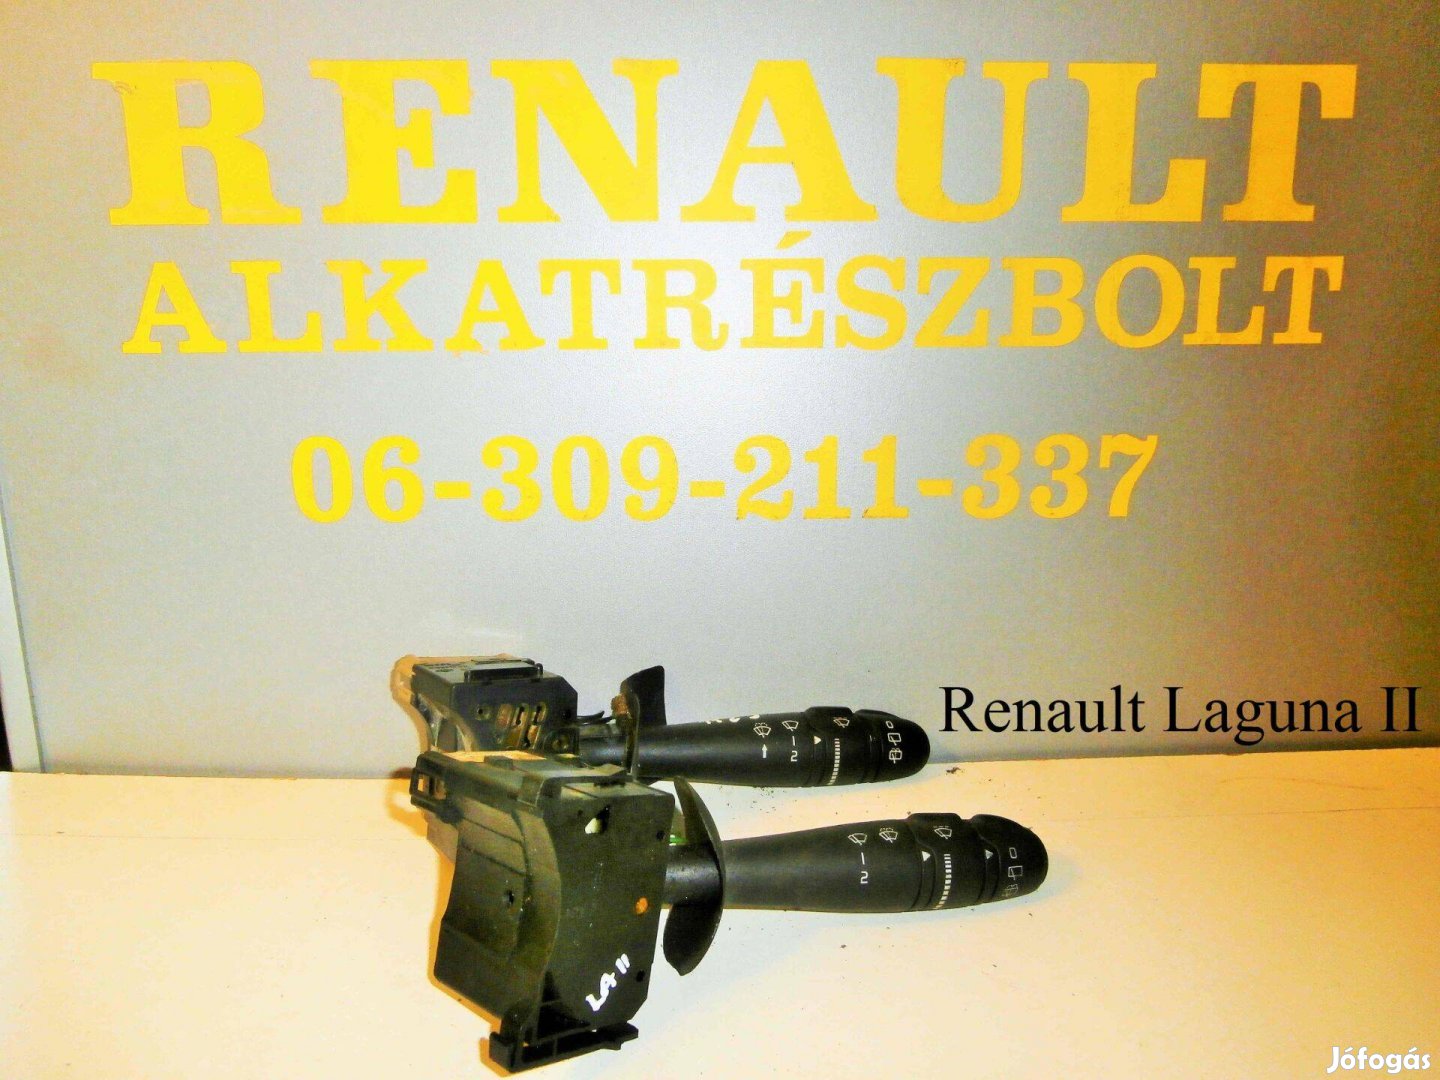 Renault Laguna II ablaktörlő kapcsoló